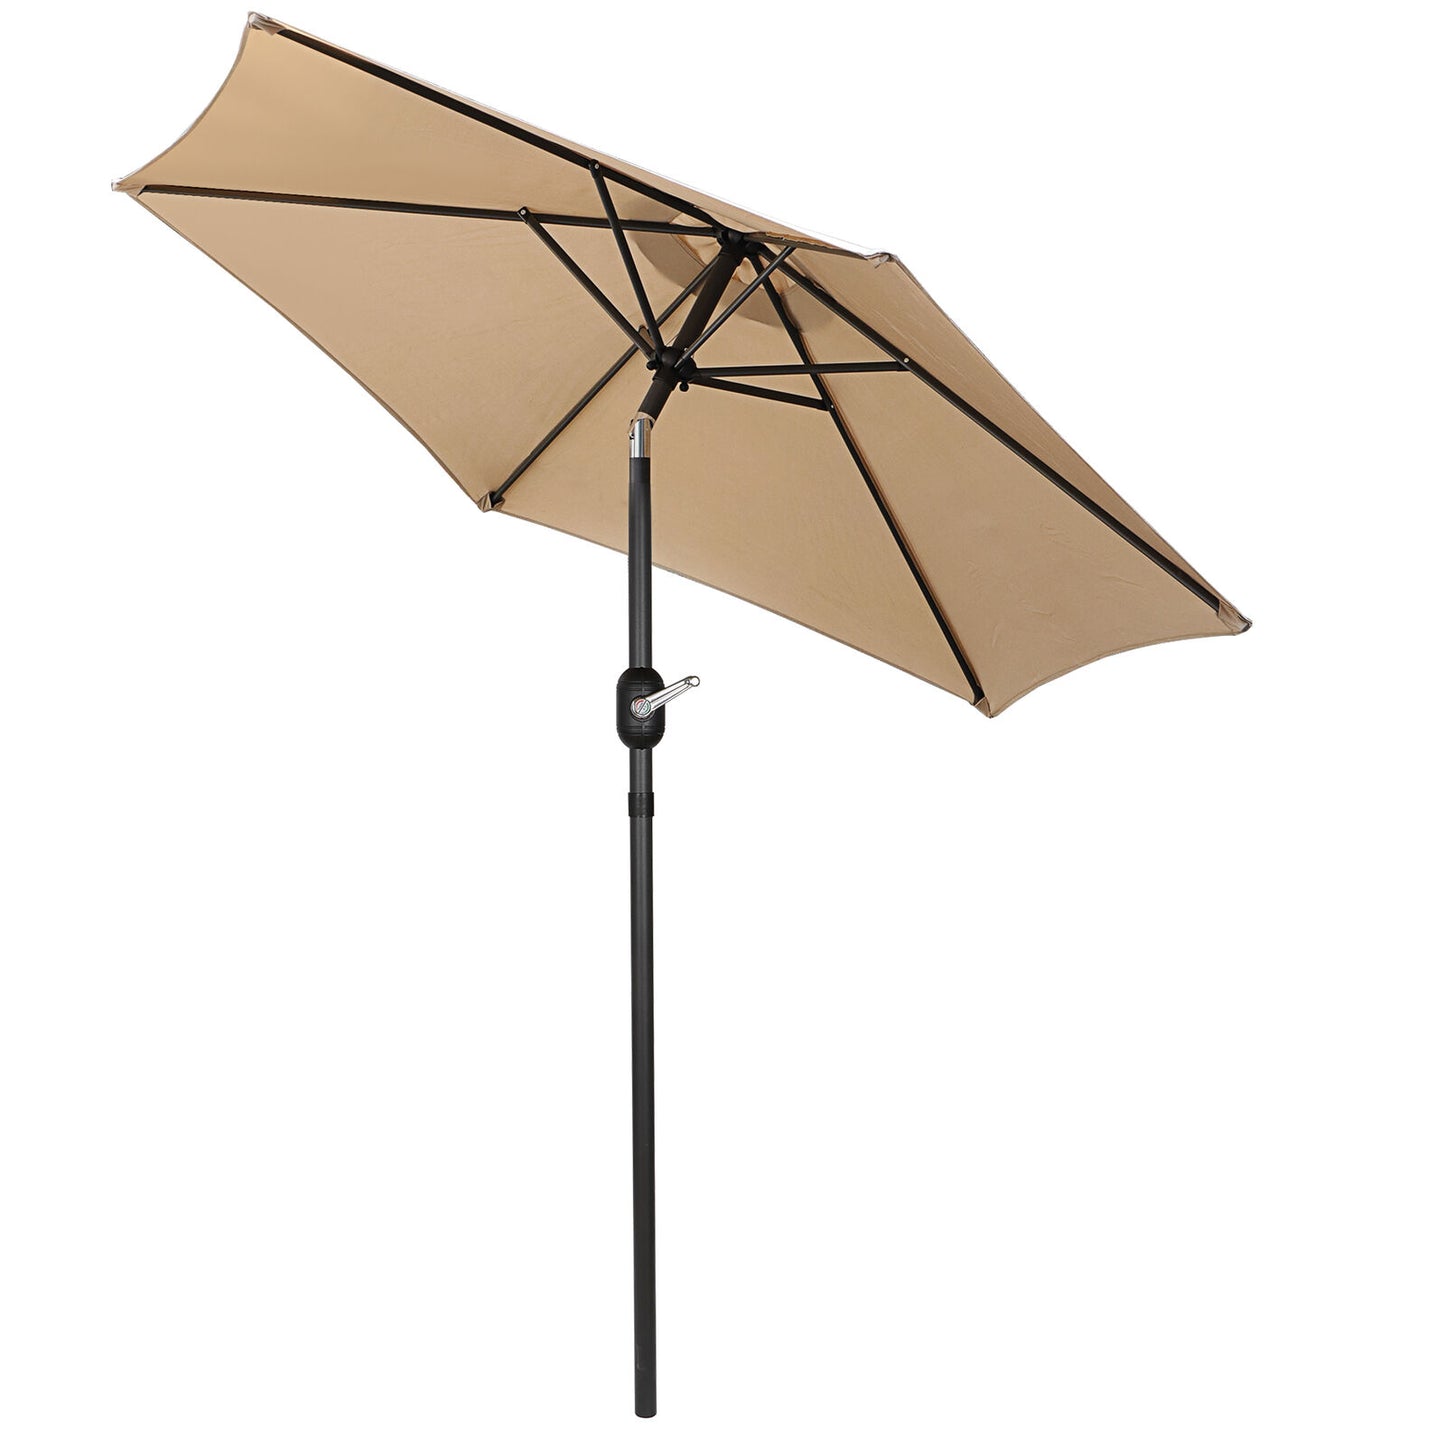 7.5 FT  Patio Umbrella Umbrella 6 Ribs with Tilt and Crank Outdoor Patio